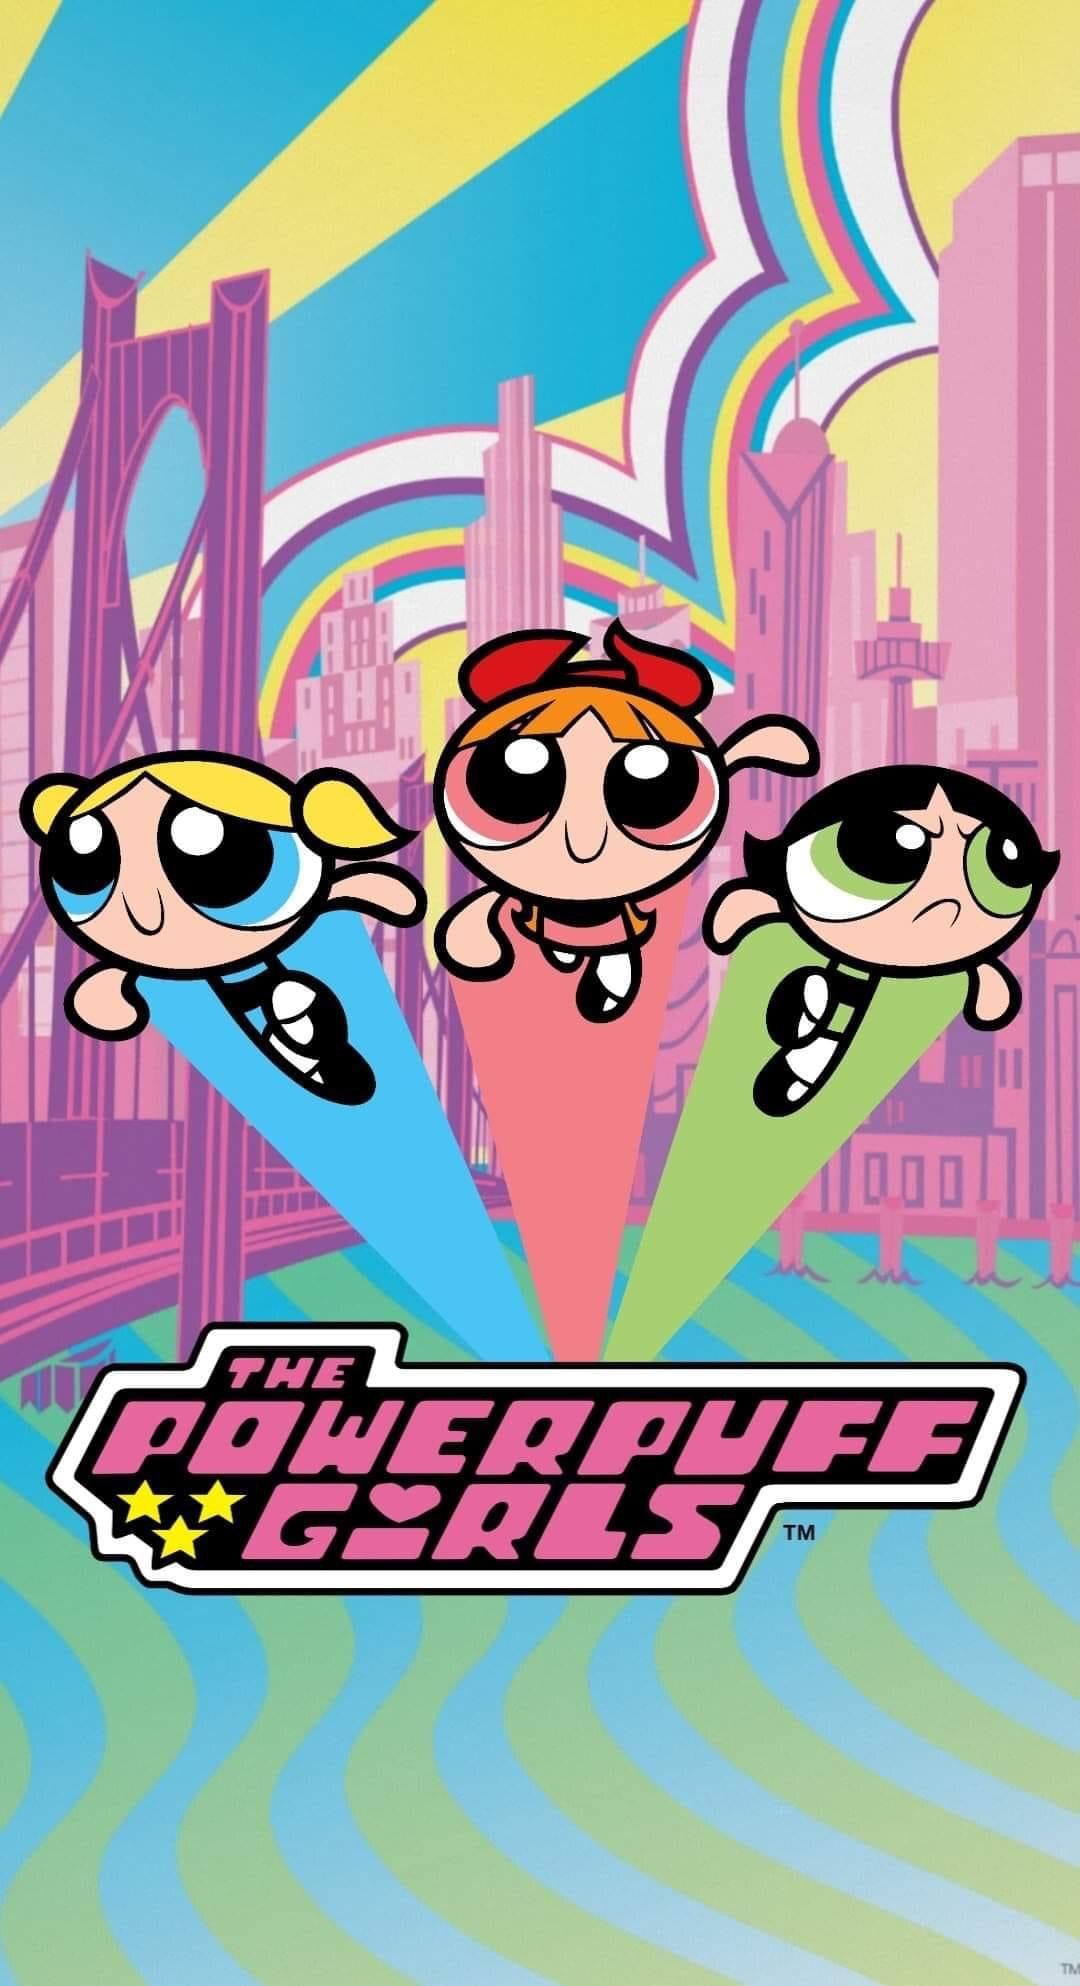 Powerpuff Girls Wallpaper